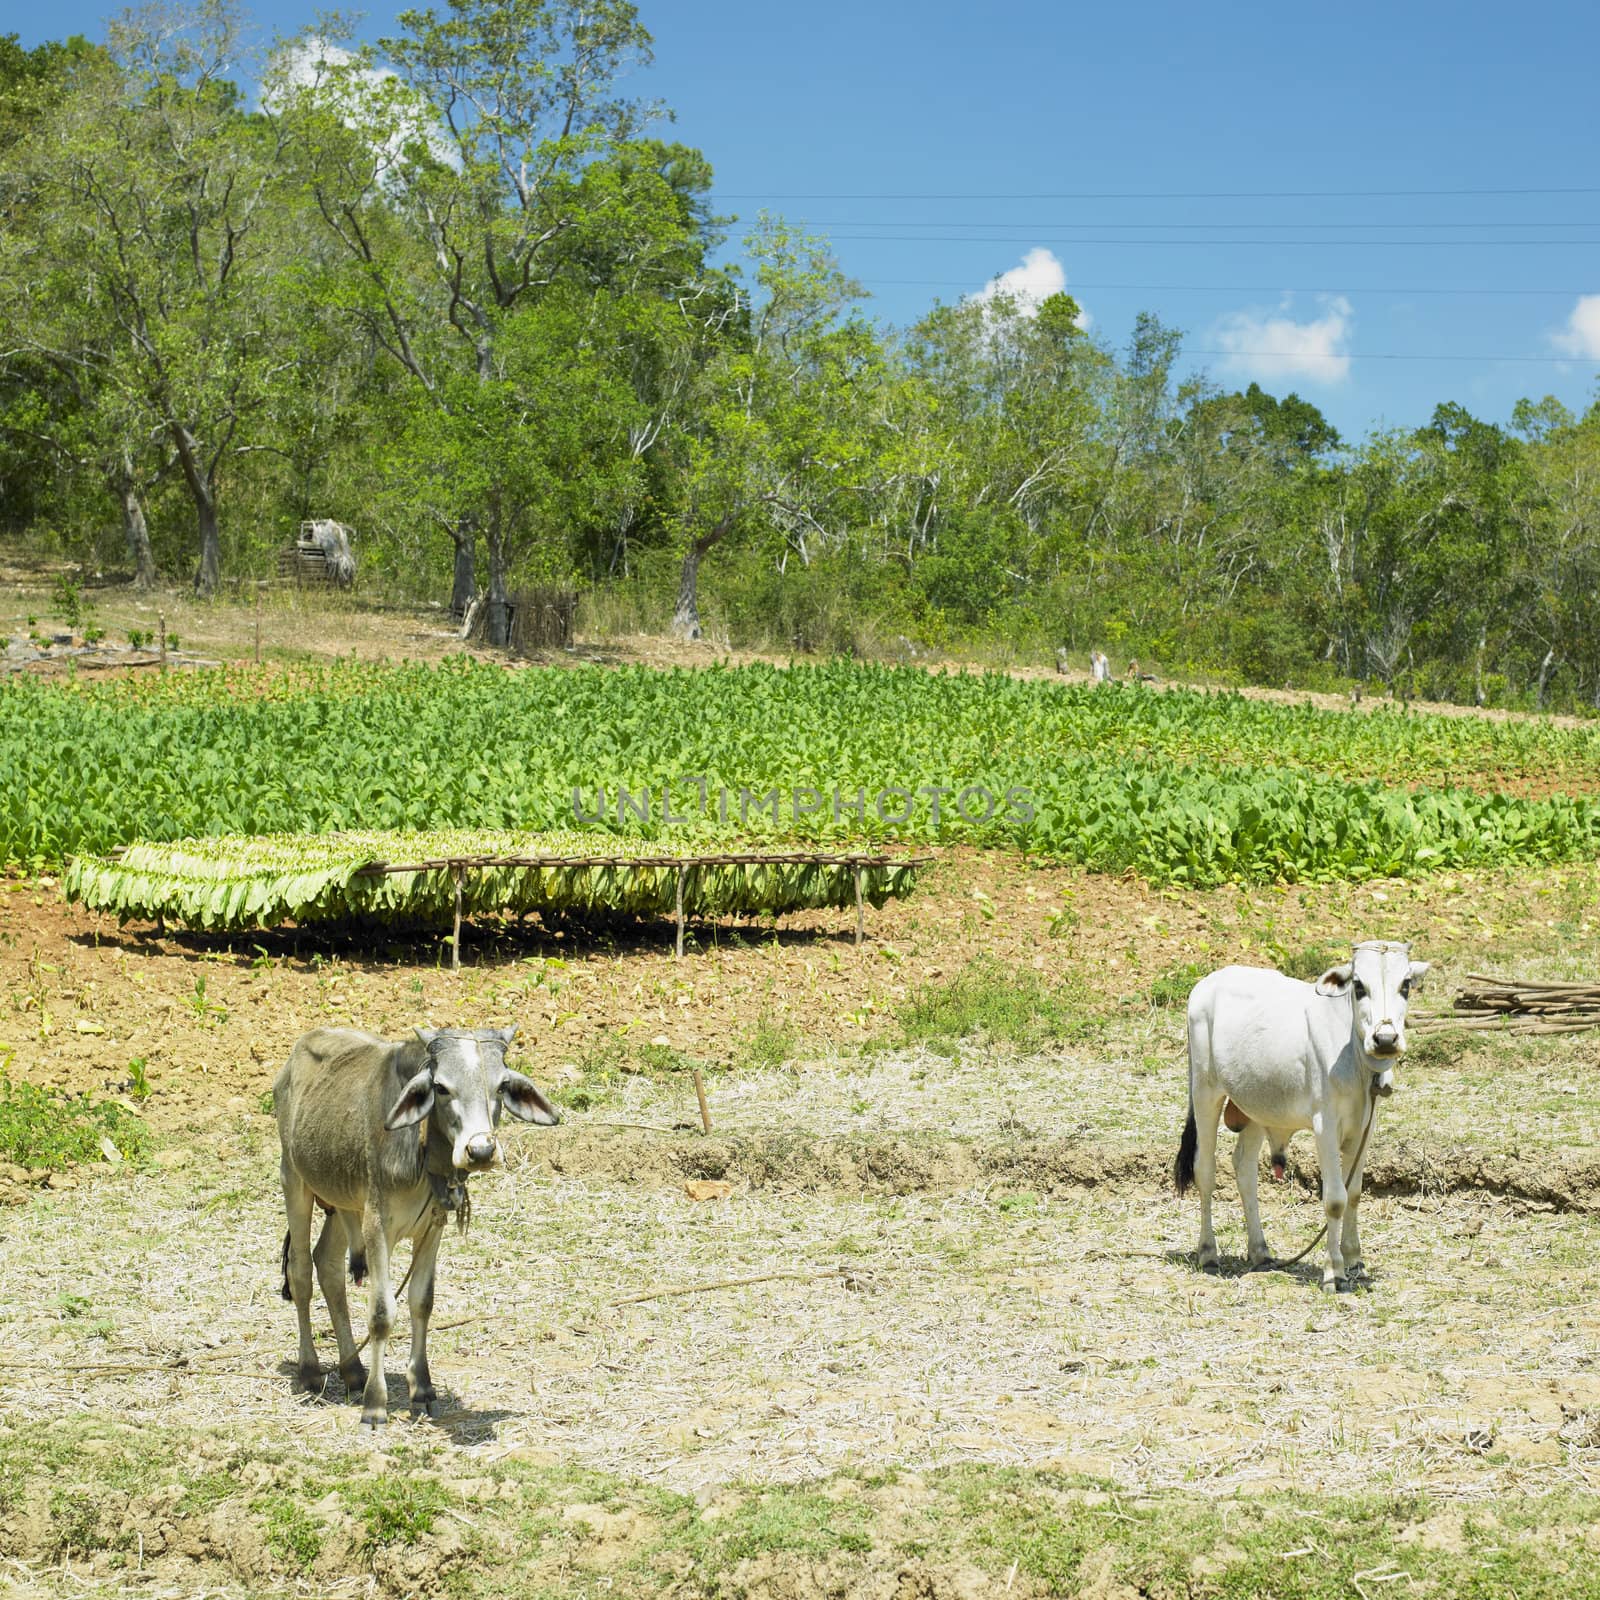 tobacco field, Pinar del Rio Province, Cuba by phbcz